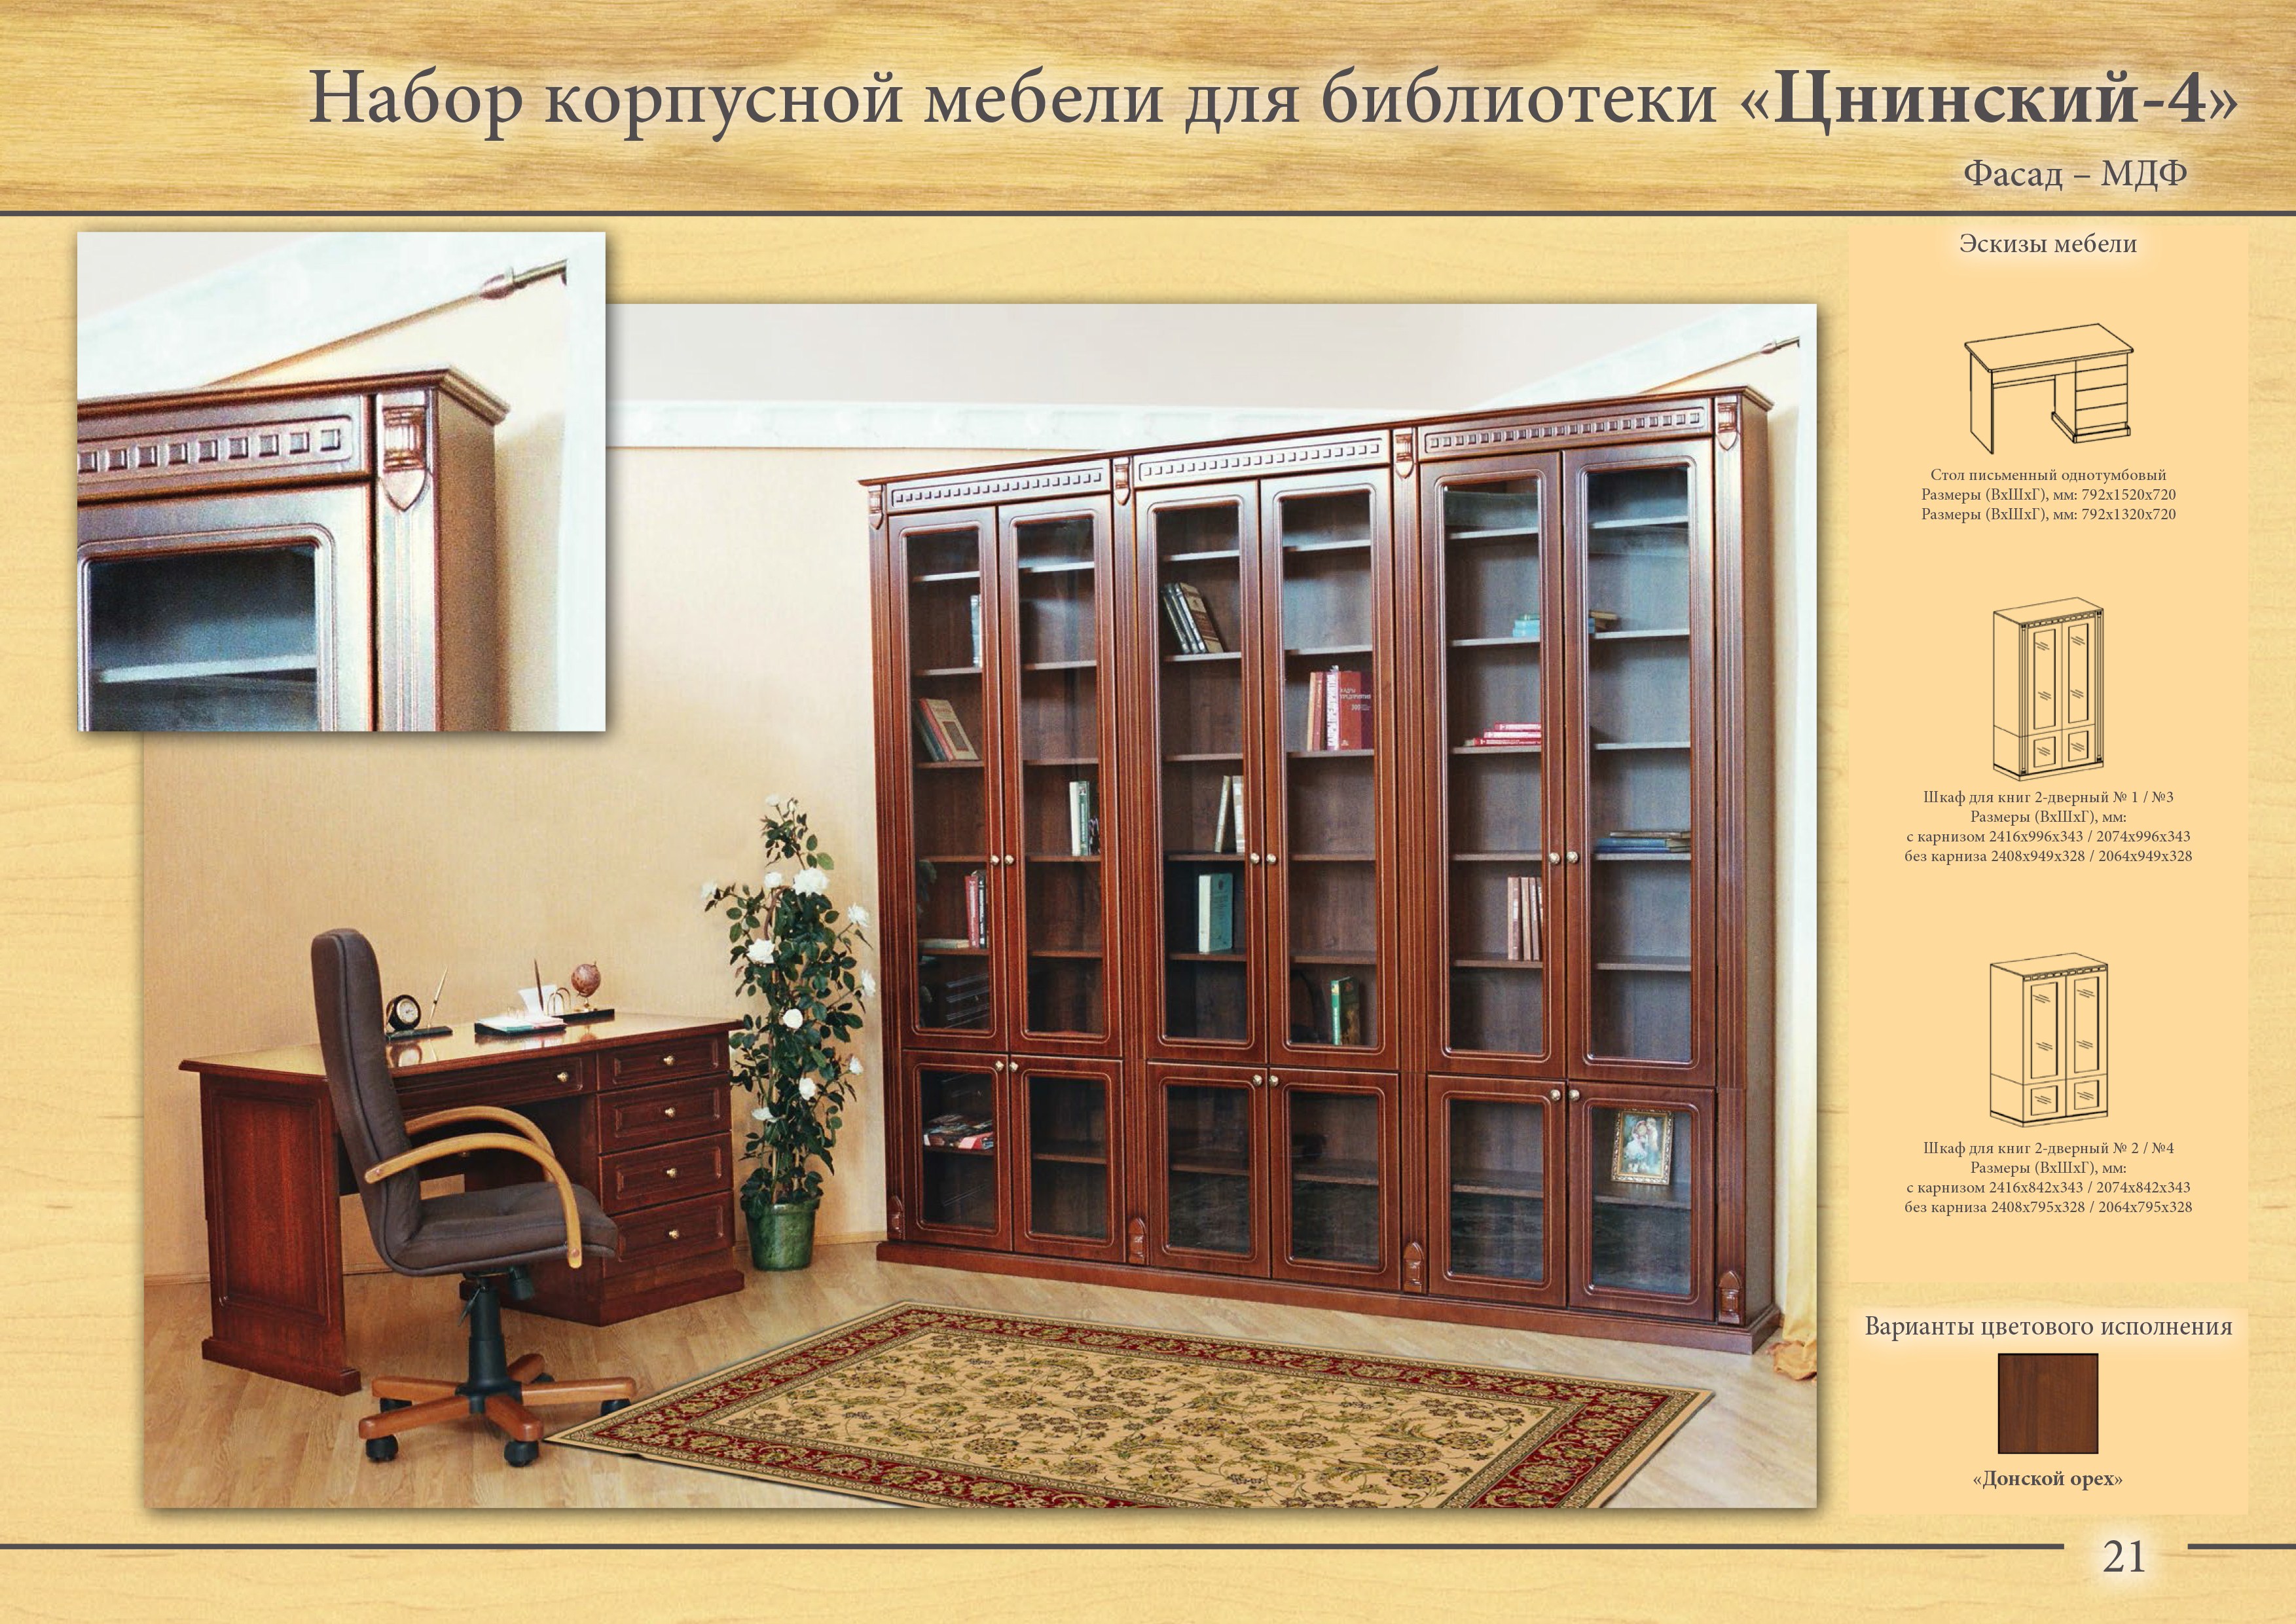 Набор корпусной мебели для библиотеки "Цнинский"